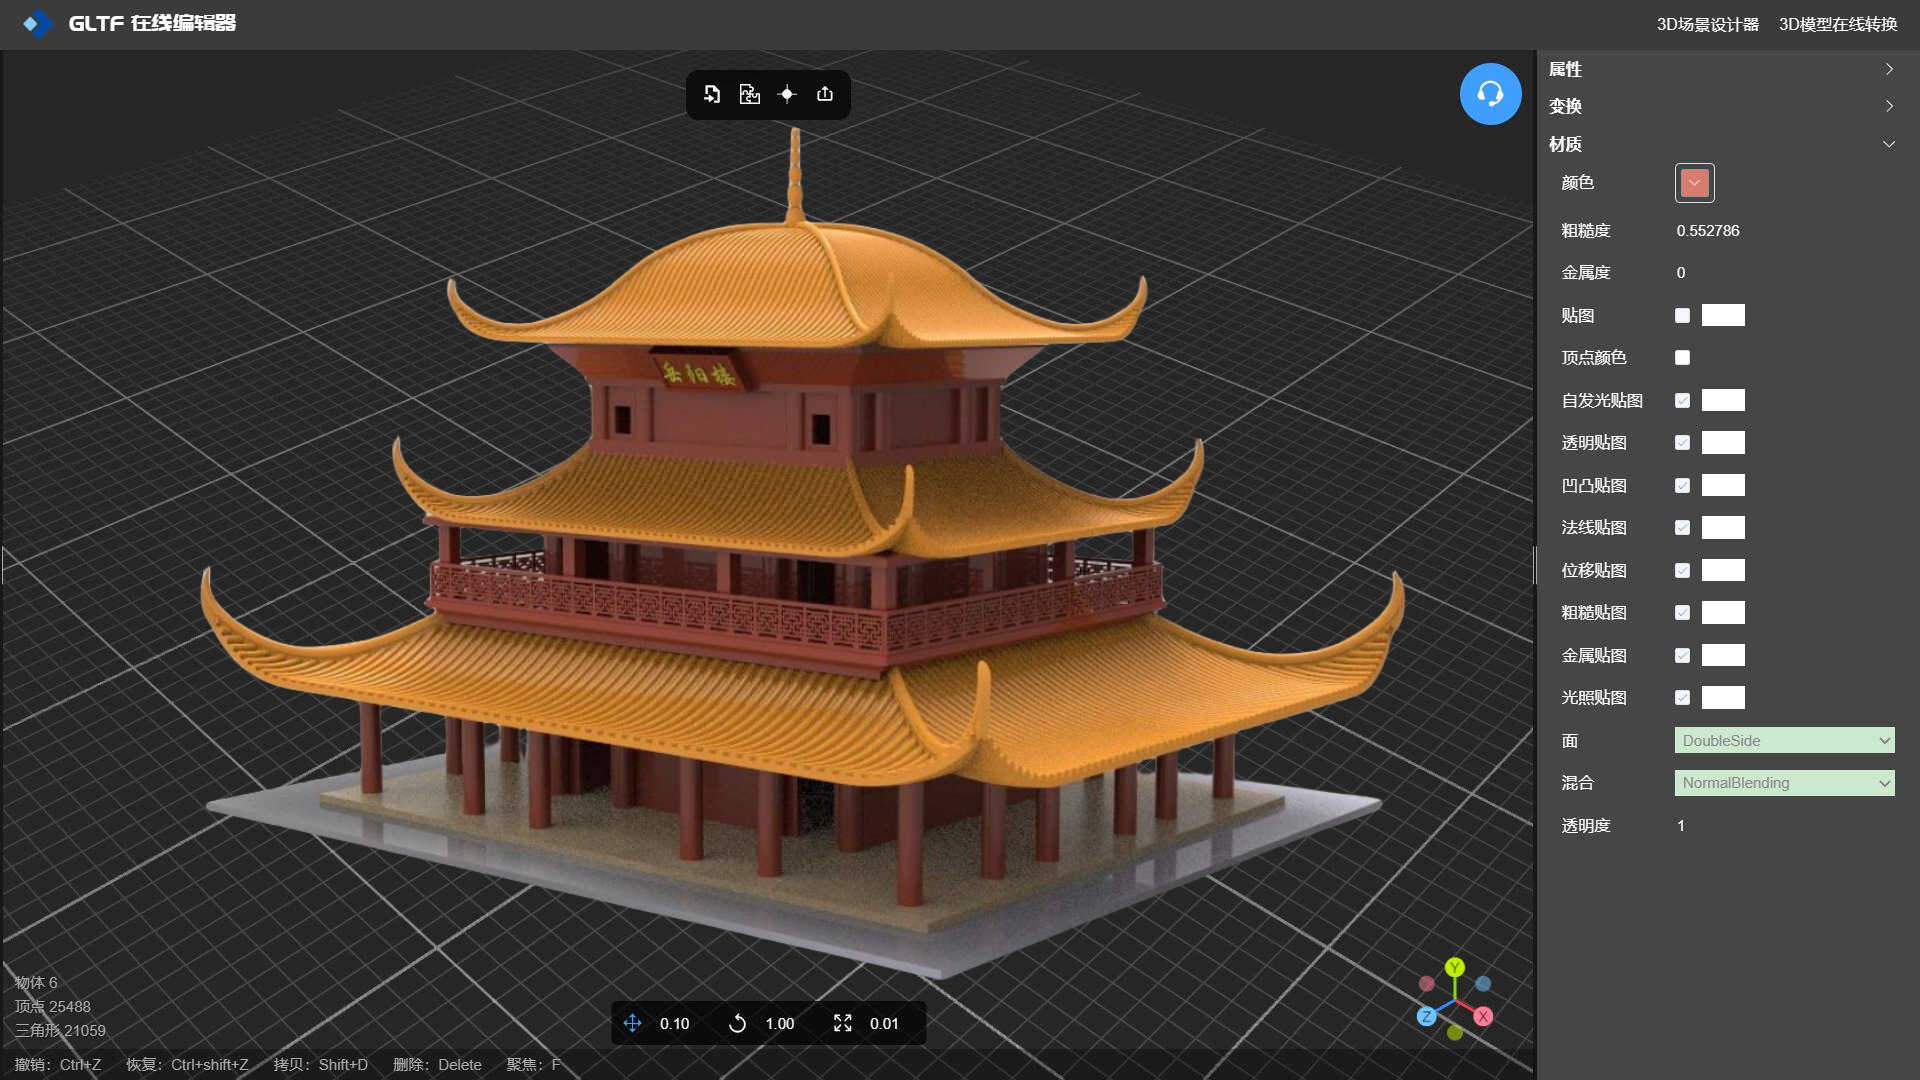 岳阳楼3D模型纹理贴图